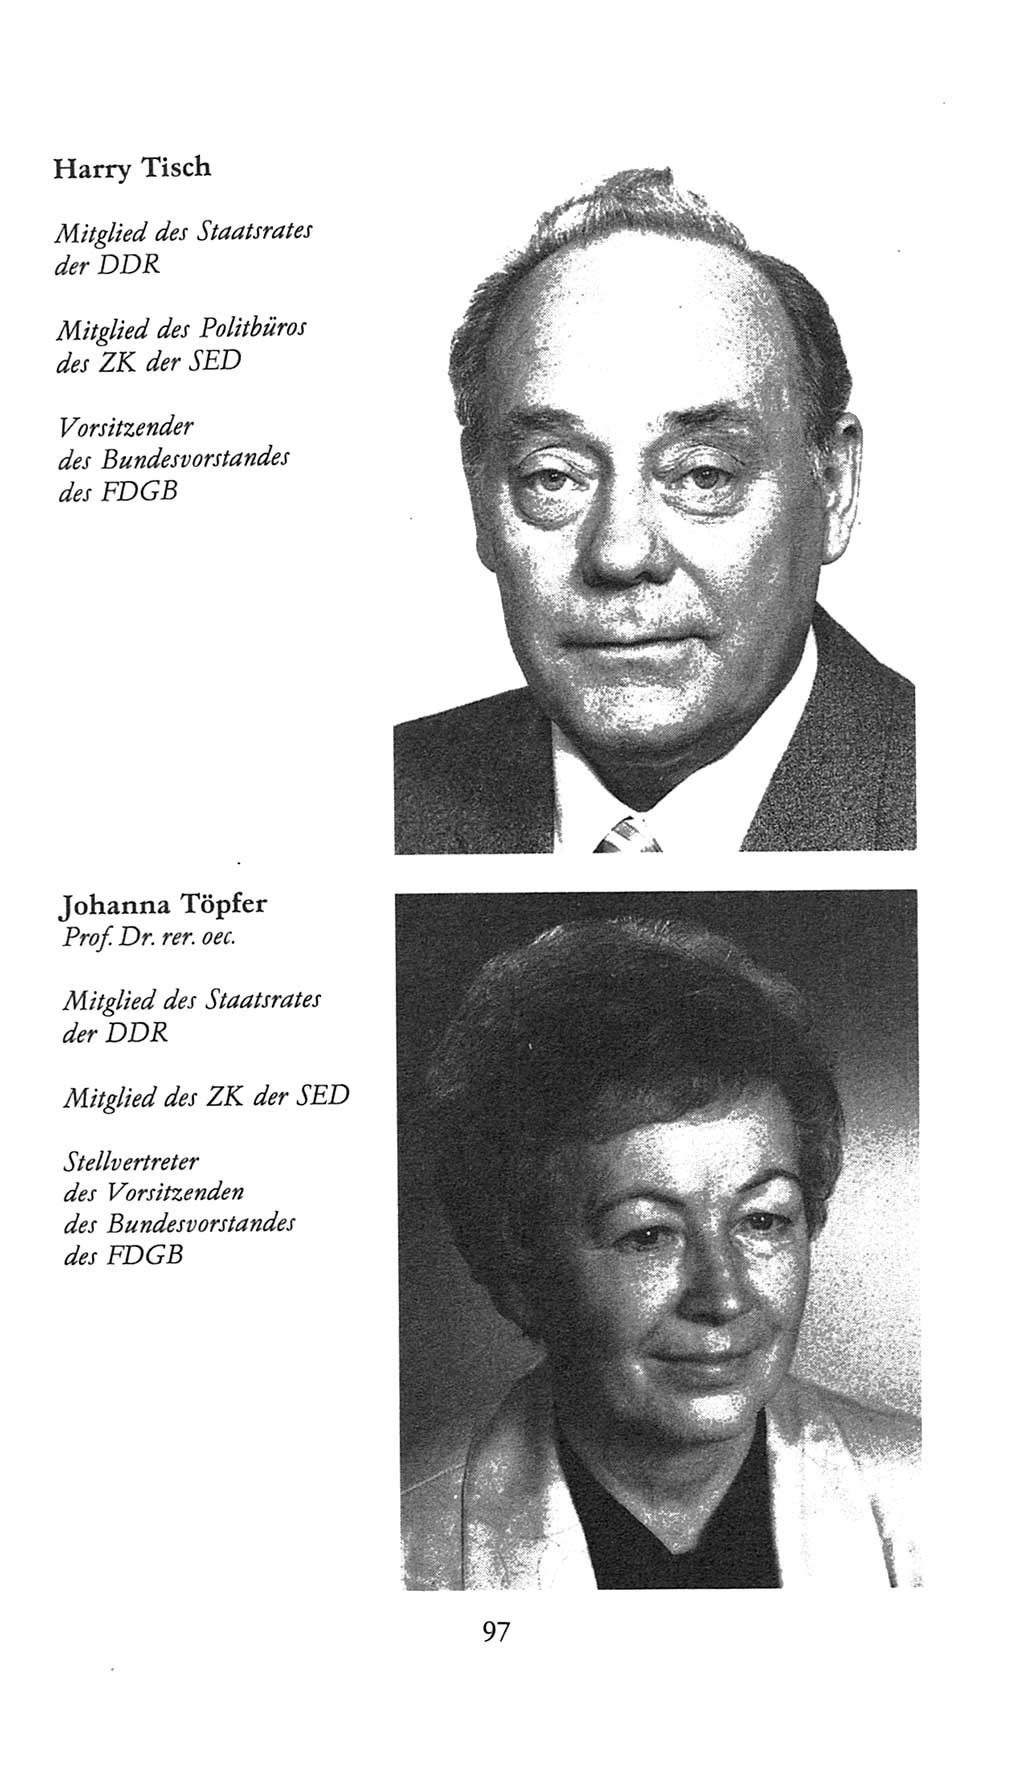 Volkskammer (VK) der Deutschen Demokratischen Republik (DDR), 9. Wahlperiode 1986-1990, Seite 97 (VK. DDR 9. WP. 1986-1990, S. 97)